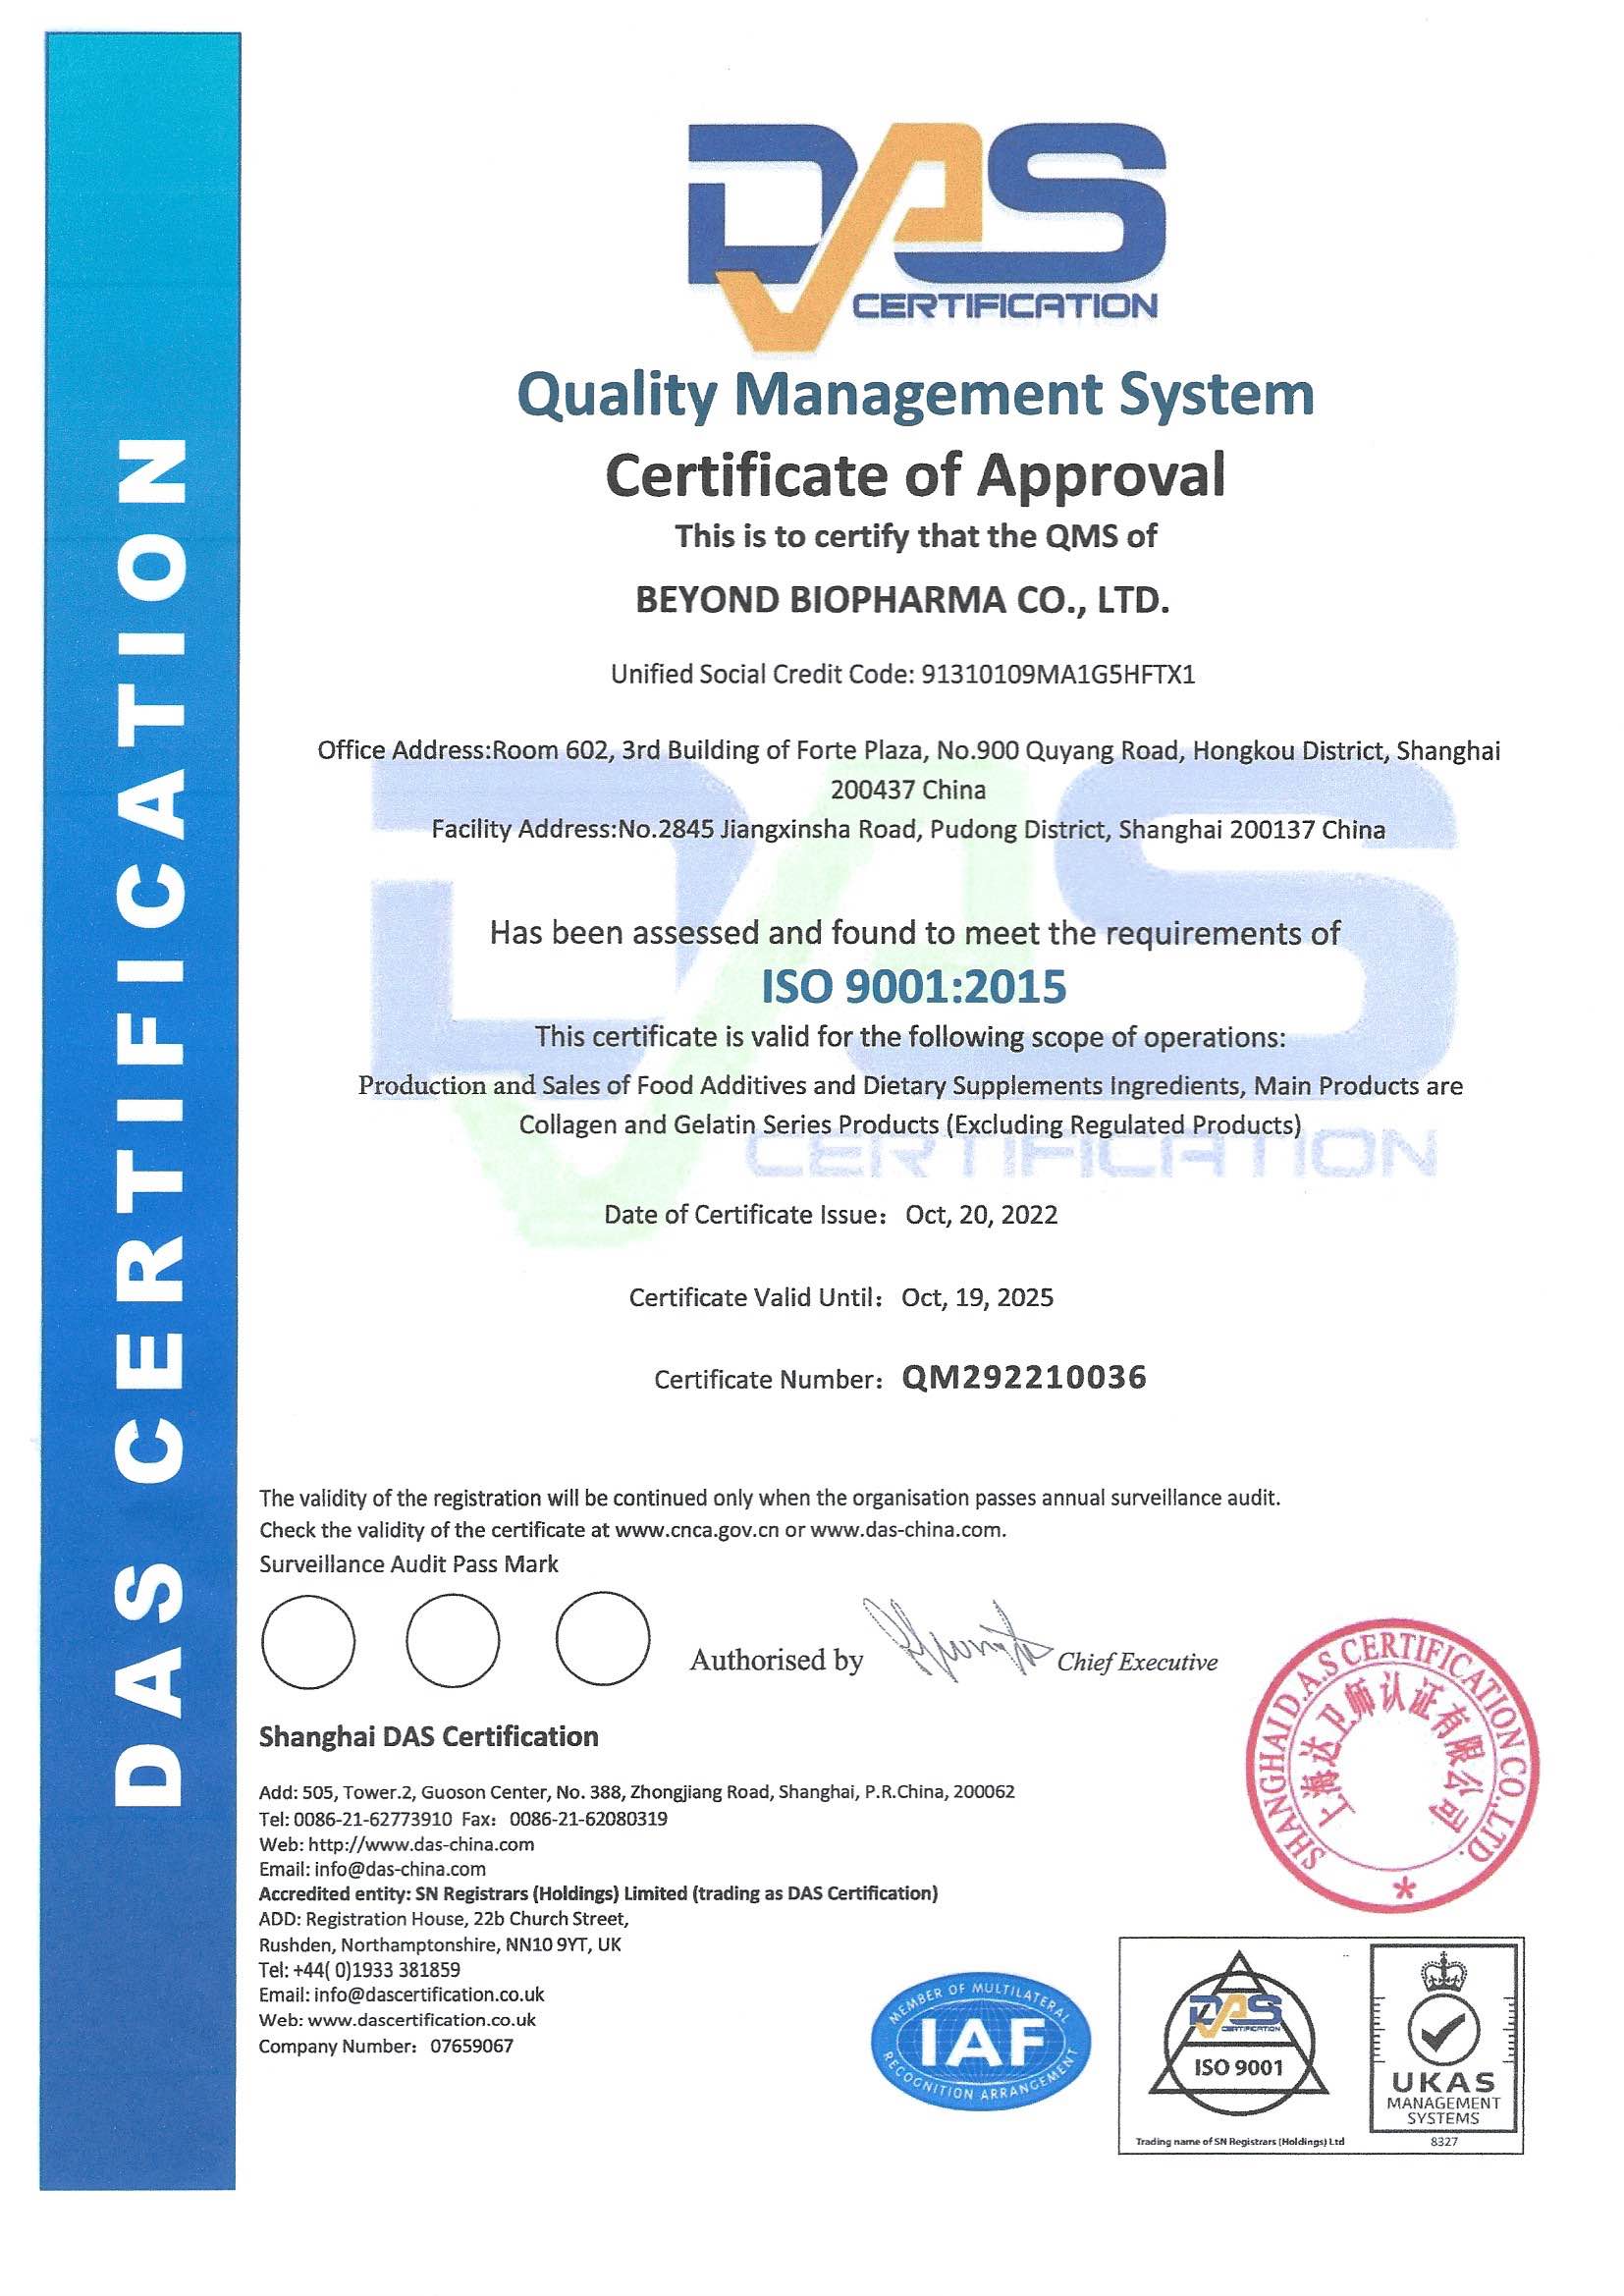 અમારી કંપનીને સફળતાપૂર્વક ISO 9001:2015 ગુણવત્તા વ્યવસ્થાપન સિસ્ટમ પ્રમાણપત્ર પ્રમાણપત્ર અપગ્રેડ કરવા માટે અભિનંદન